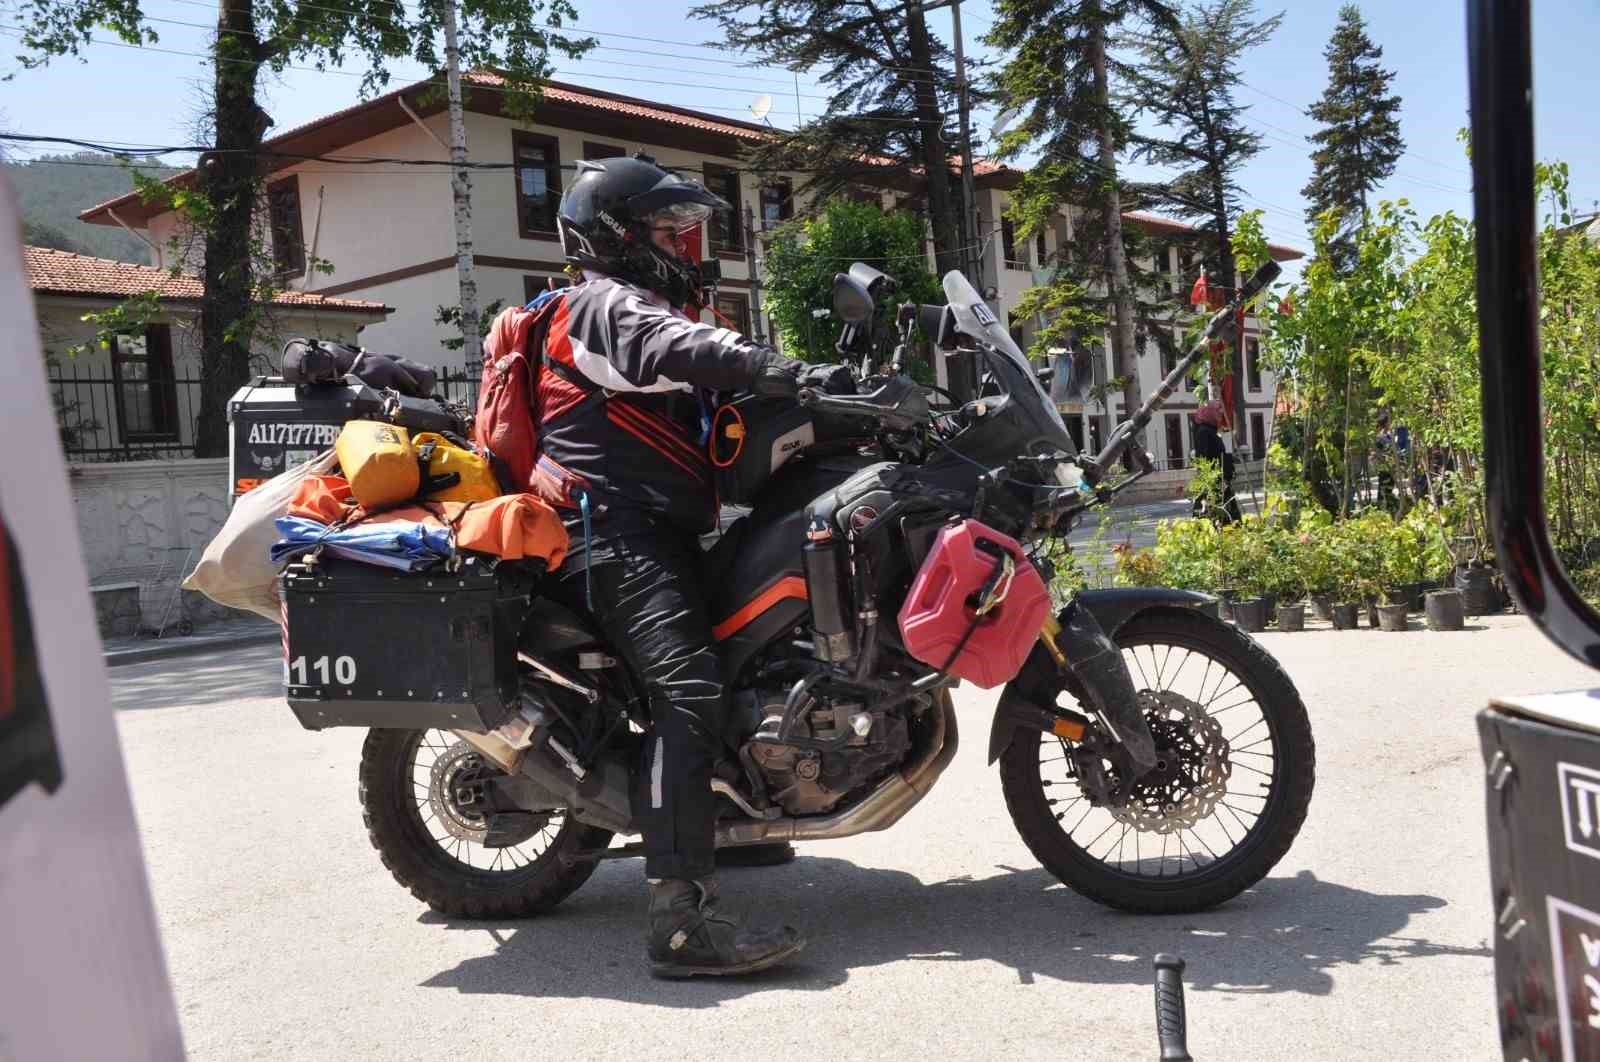 Taylandlı turist Türkiye’yi motosikletiyle şehir şehir geziyor
